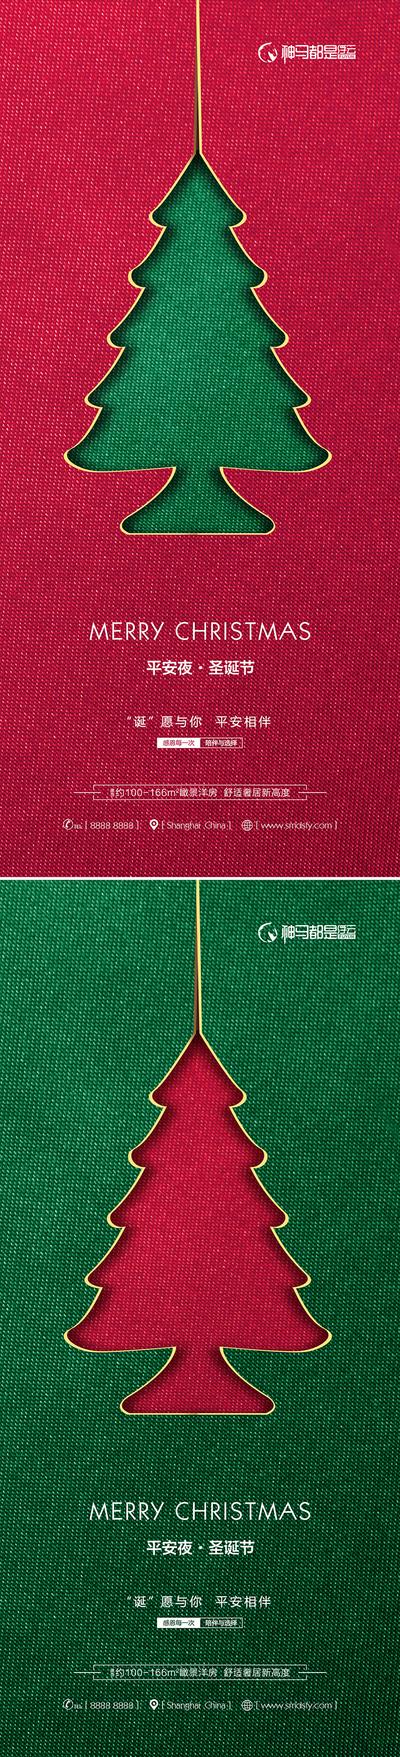 南门网 海报 房地产 公历节日 平安夜 圣诞节 圣诞树 质感 简约